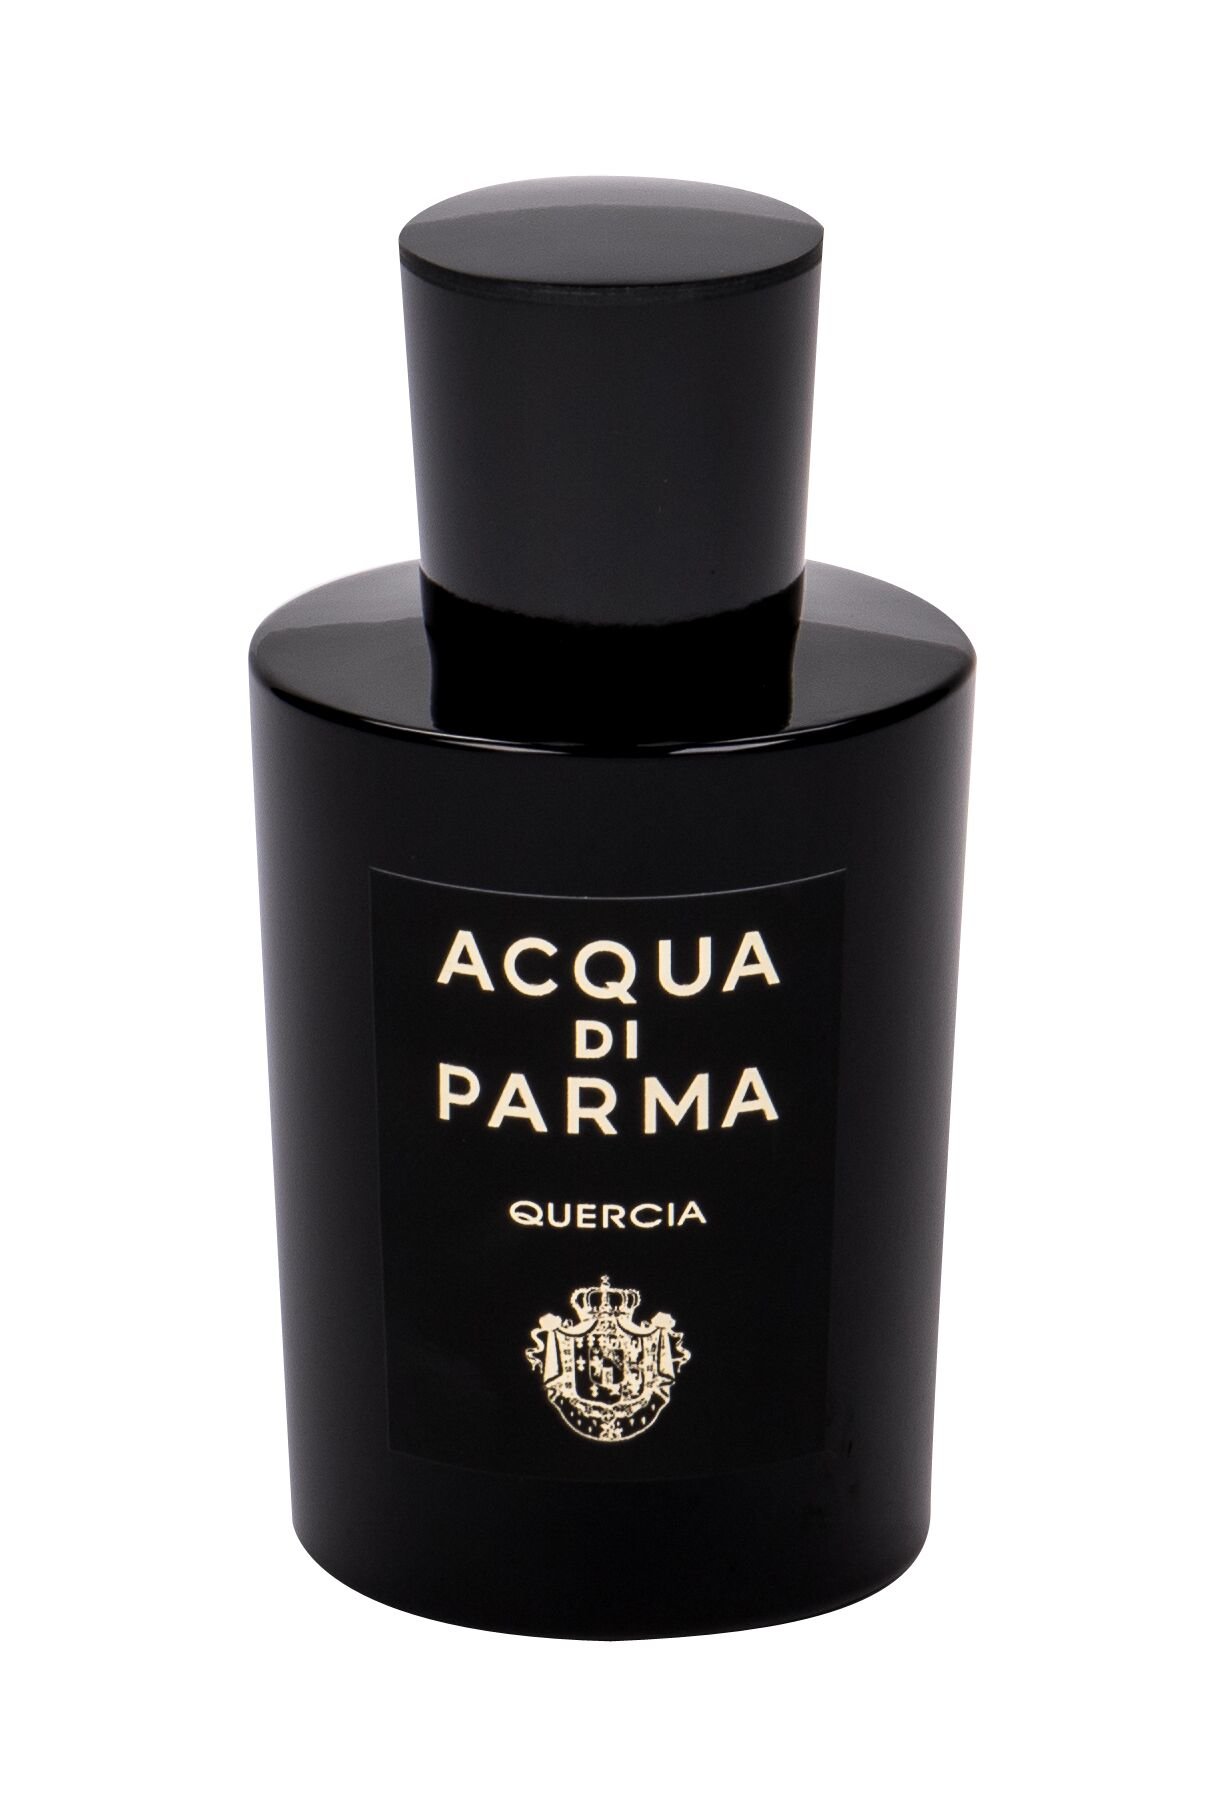 Acqua Di Parma Quercia 100ml NIŠINIAI Kvepalai Unisex EDP (Pažeista pakuotė)